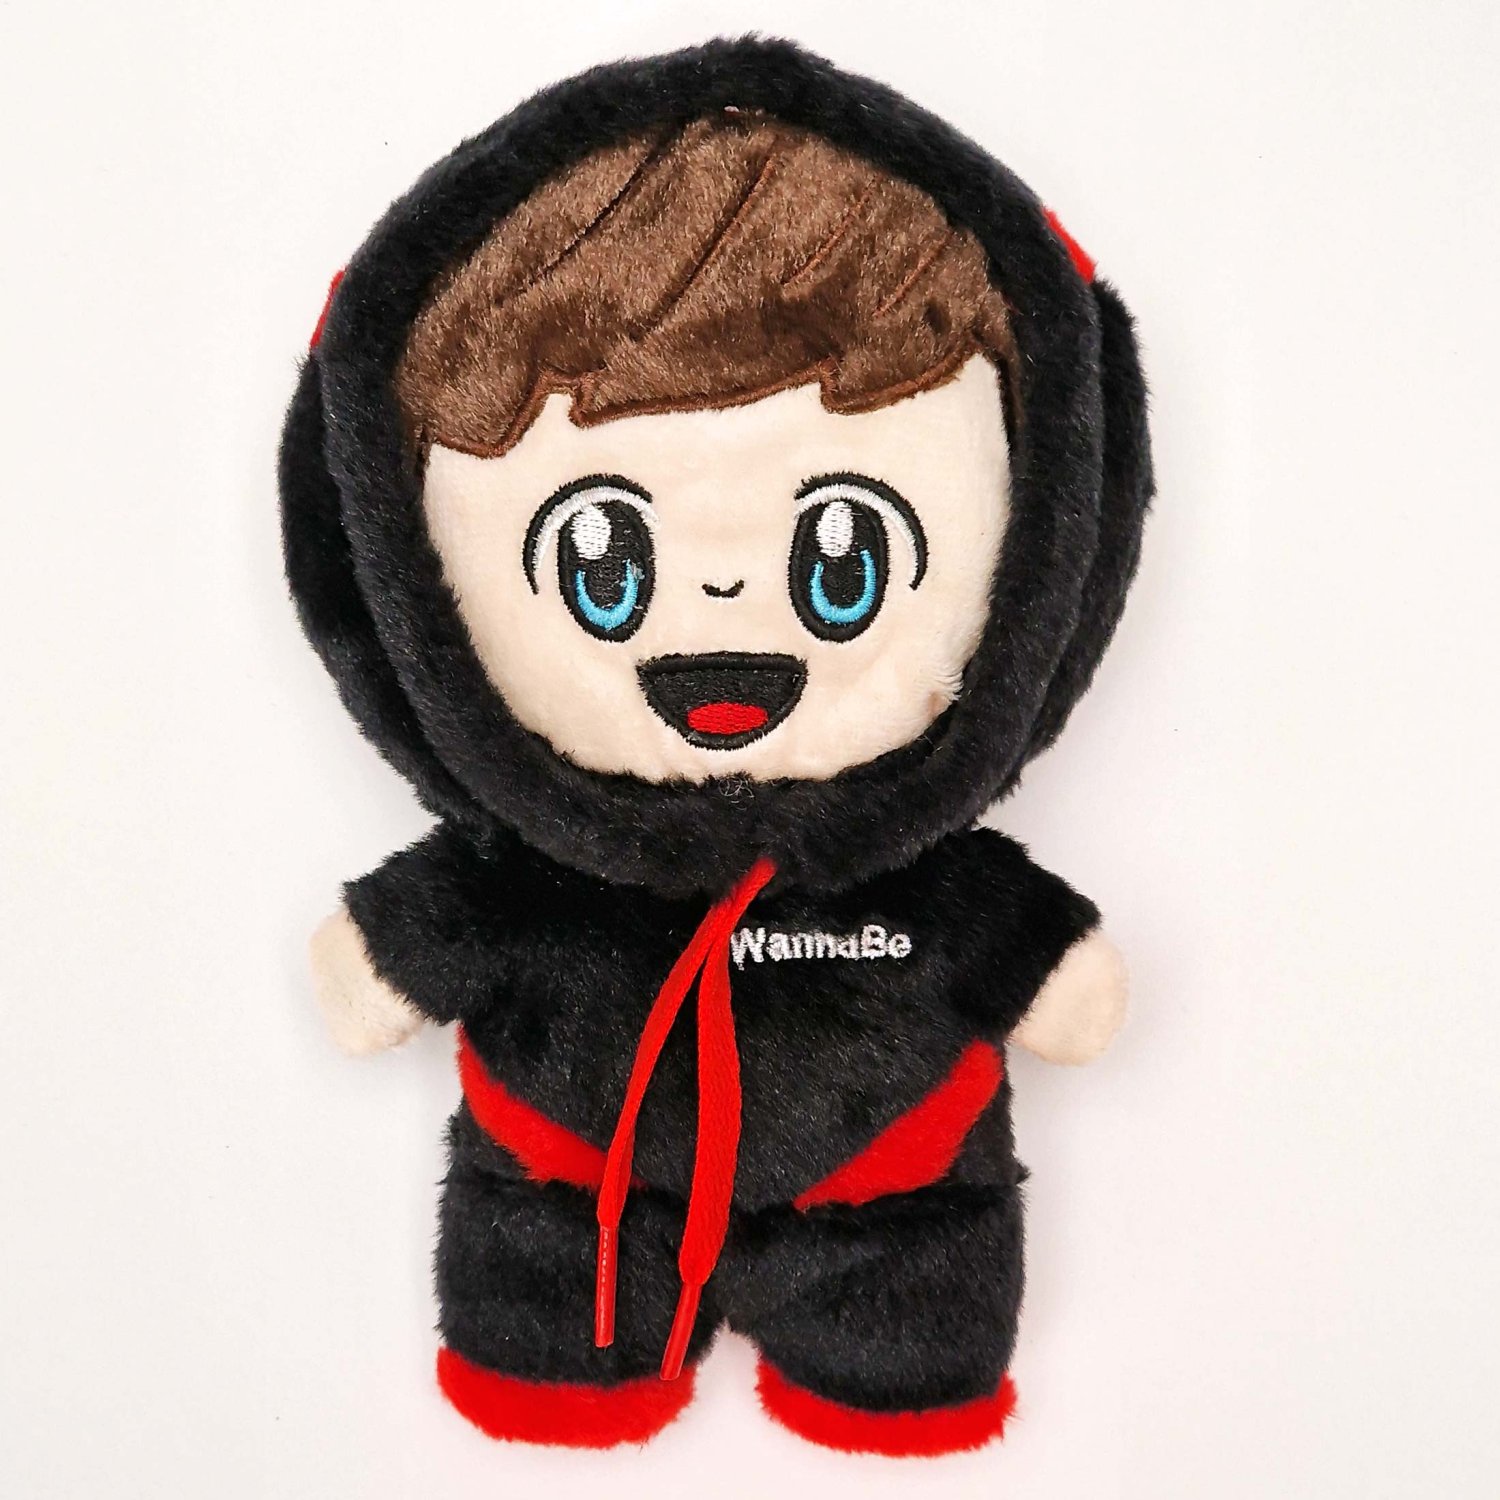 WannaBe Mini Plsch Puppe Shop Pluesch mit Hoodie